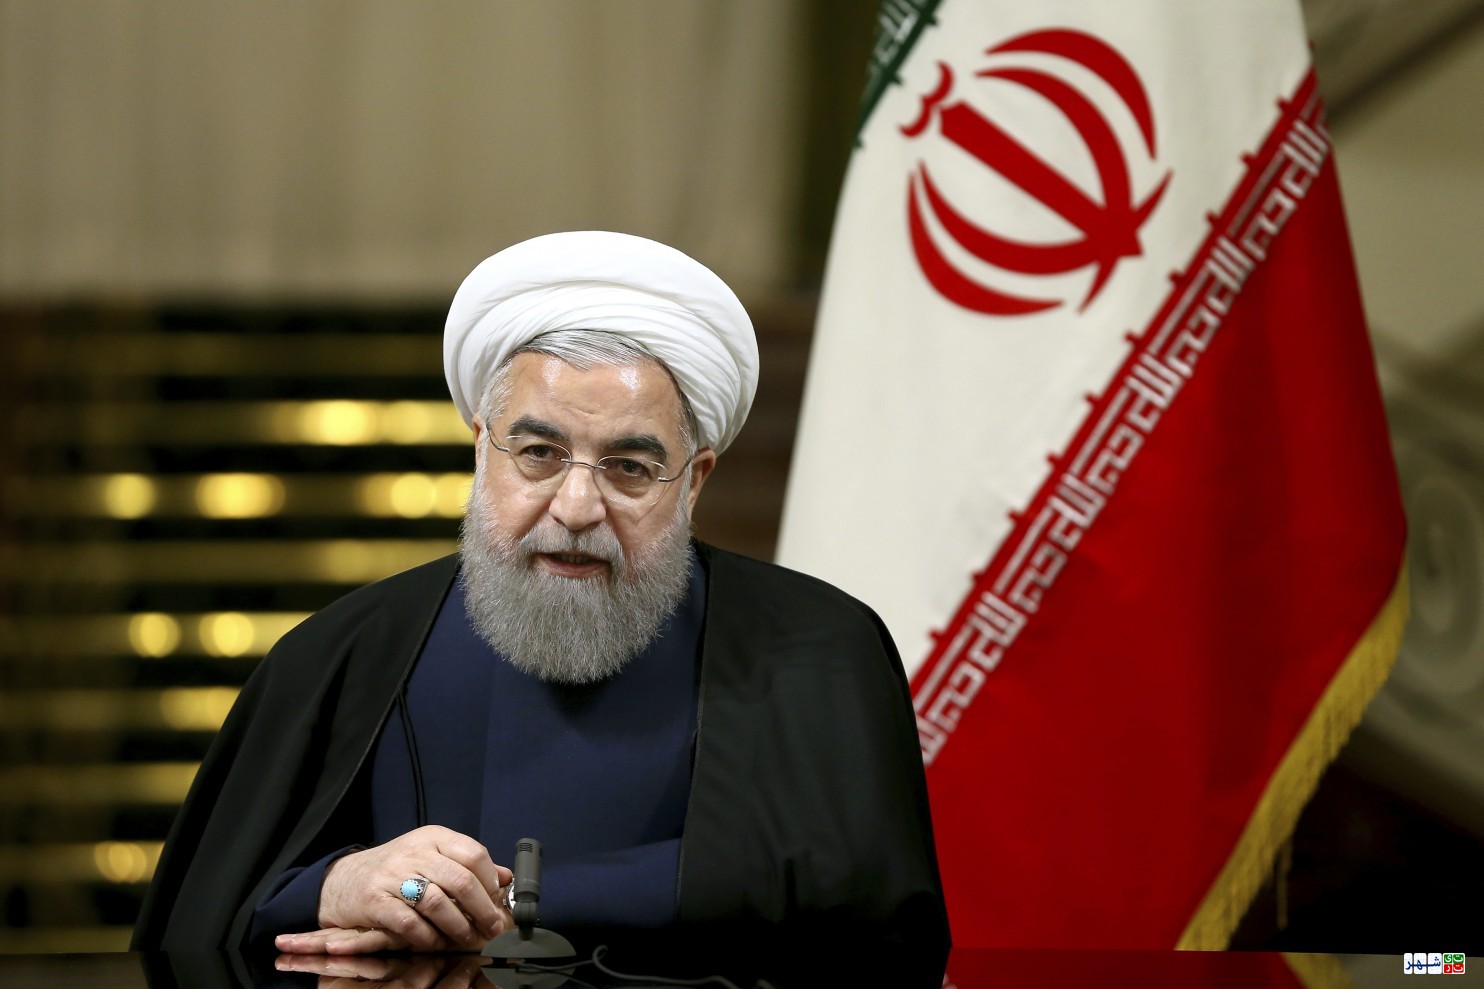 روحانی در نیویورک: تخلفات آمریکا از تعهدات بین المللی را تبیین خواهیم کرد